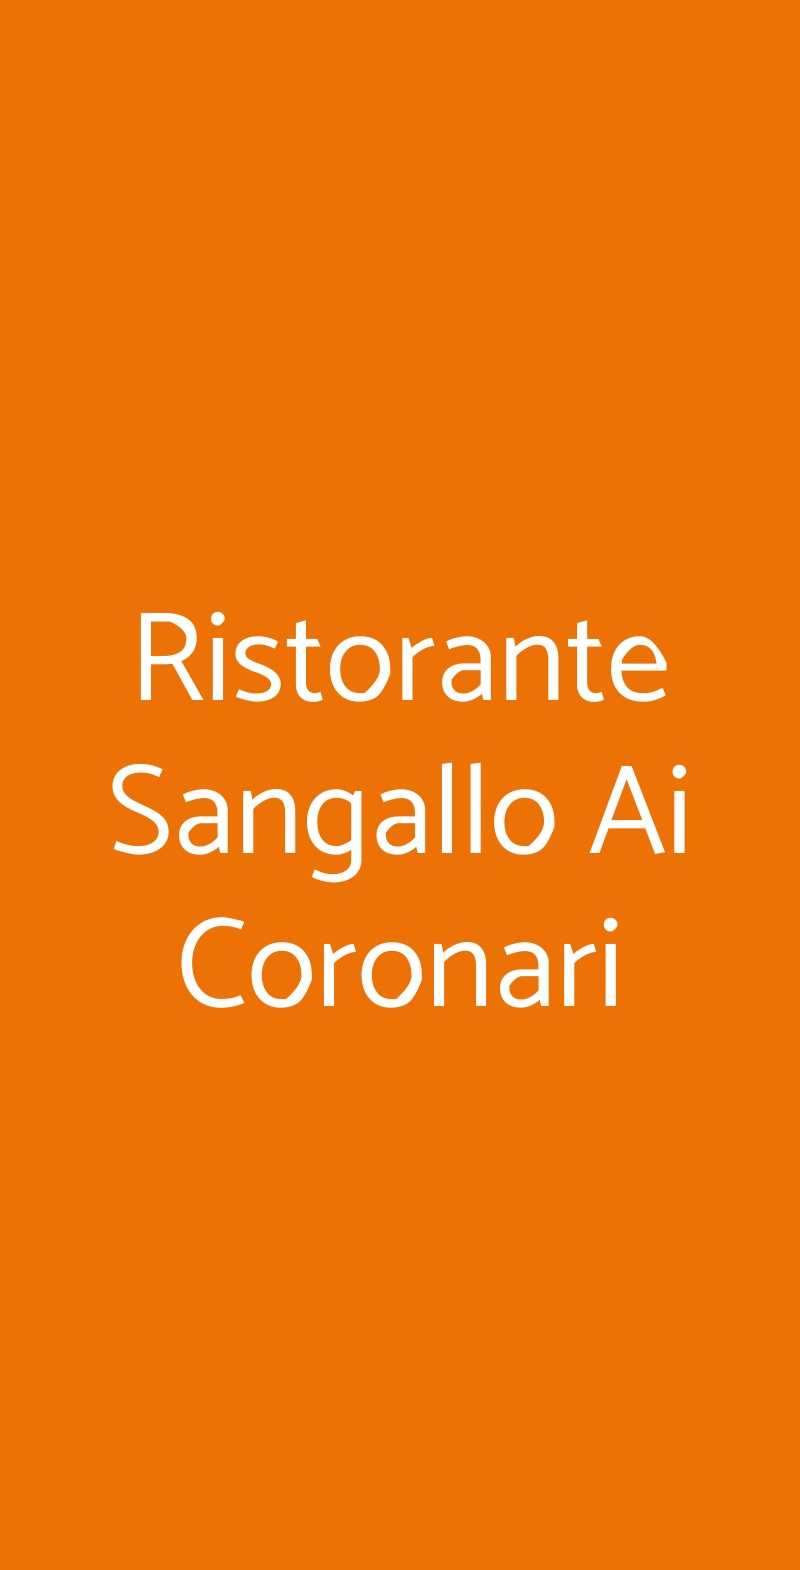 Ristorante Sangallo Ai Coronari Roma menù 1 pagina